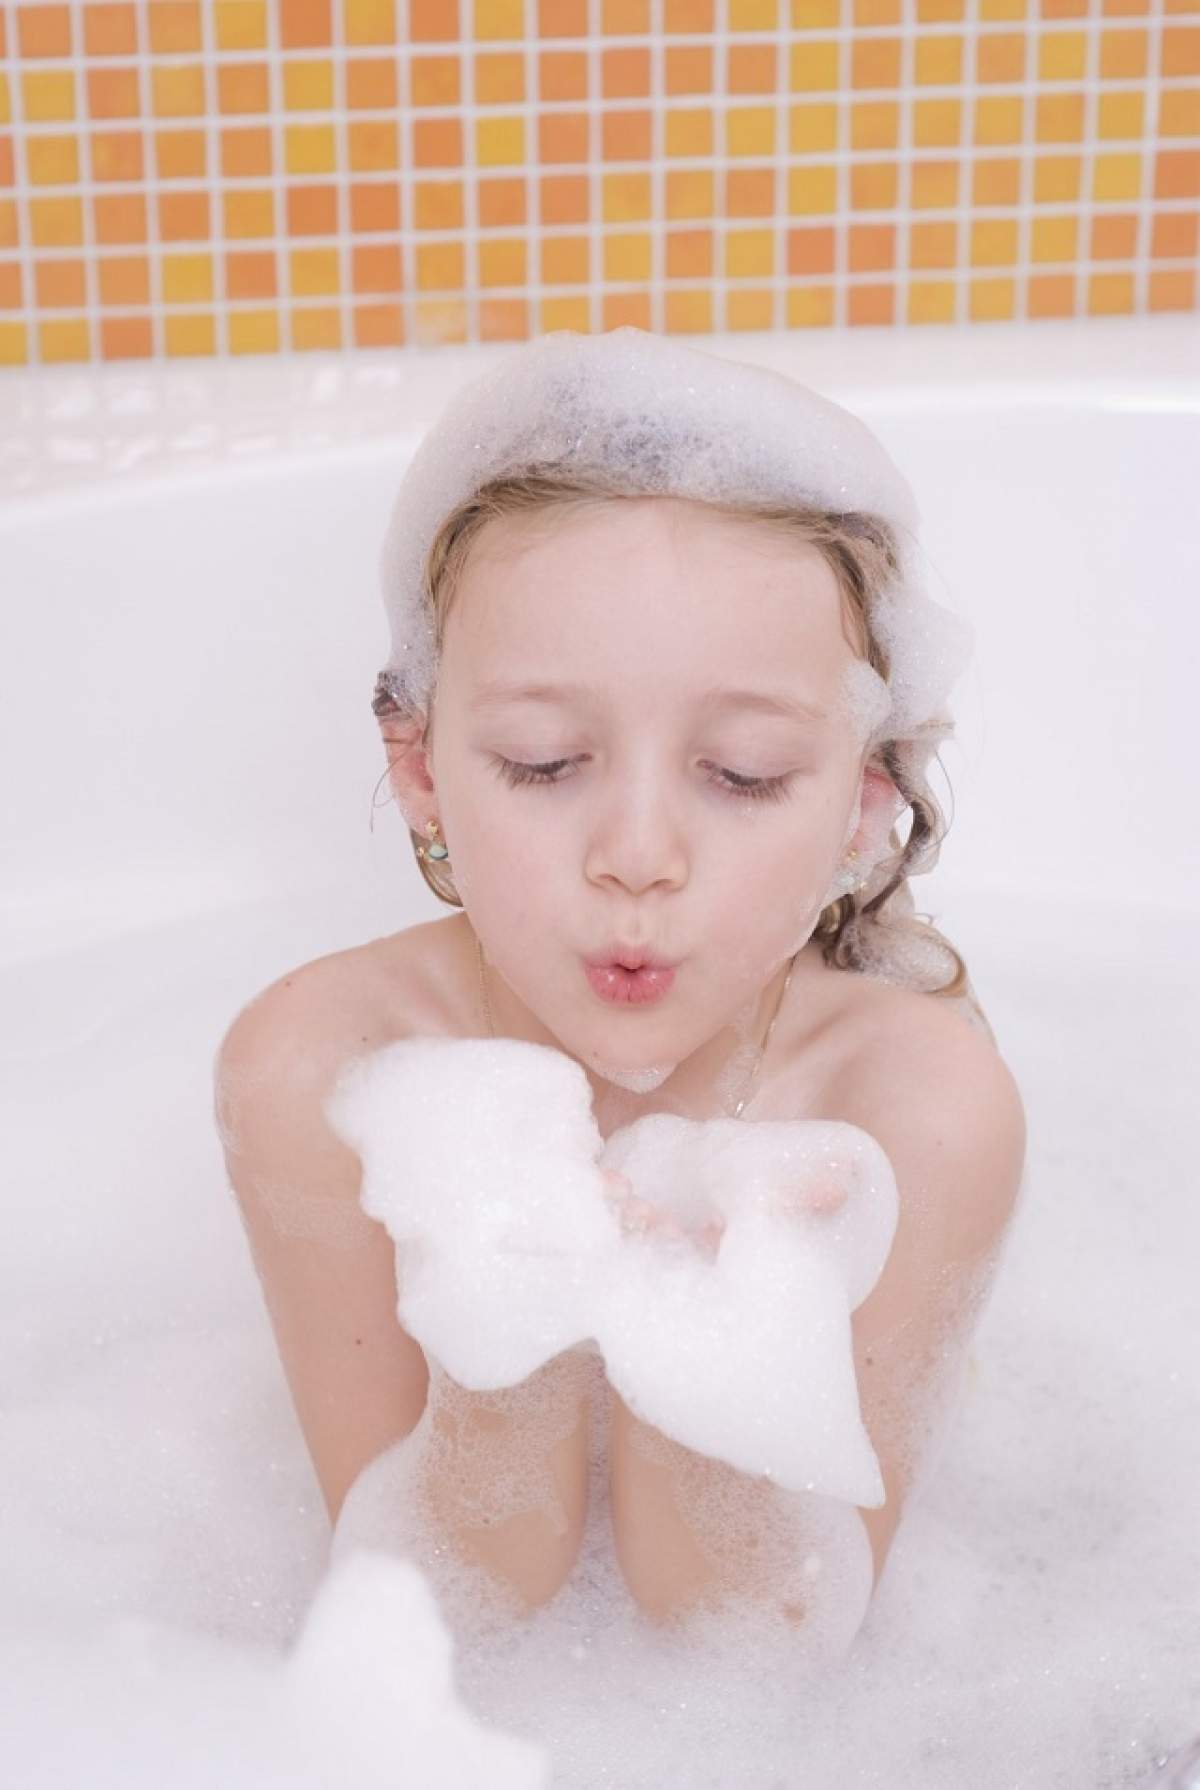 ÎNTREBAREA ZILEI - VINERI: De ce ni se încreţeşte pielea de pe degete când facem baie?